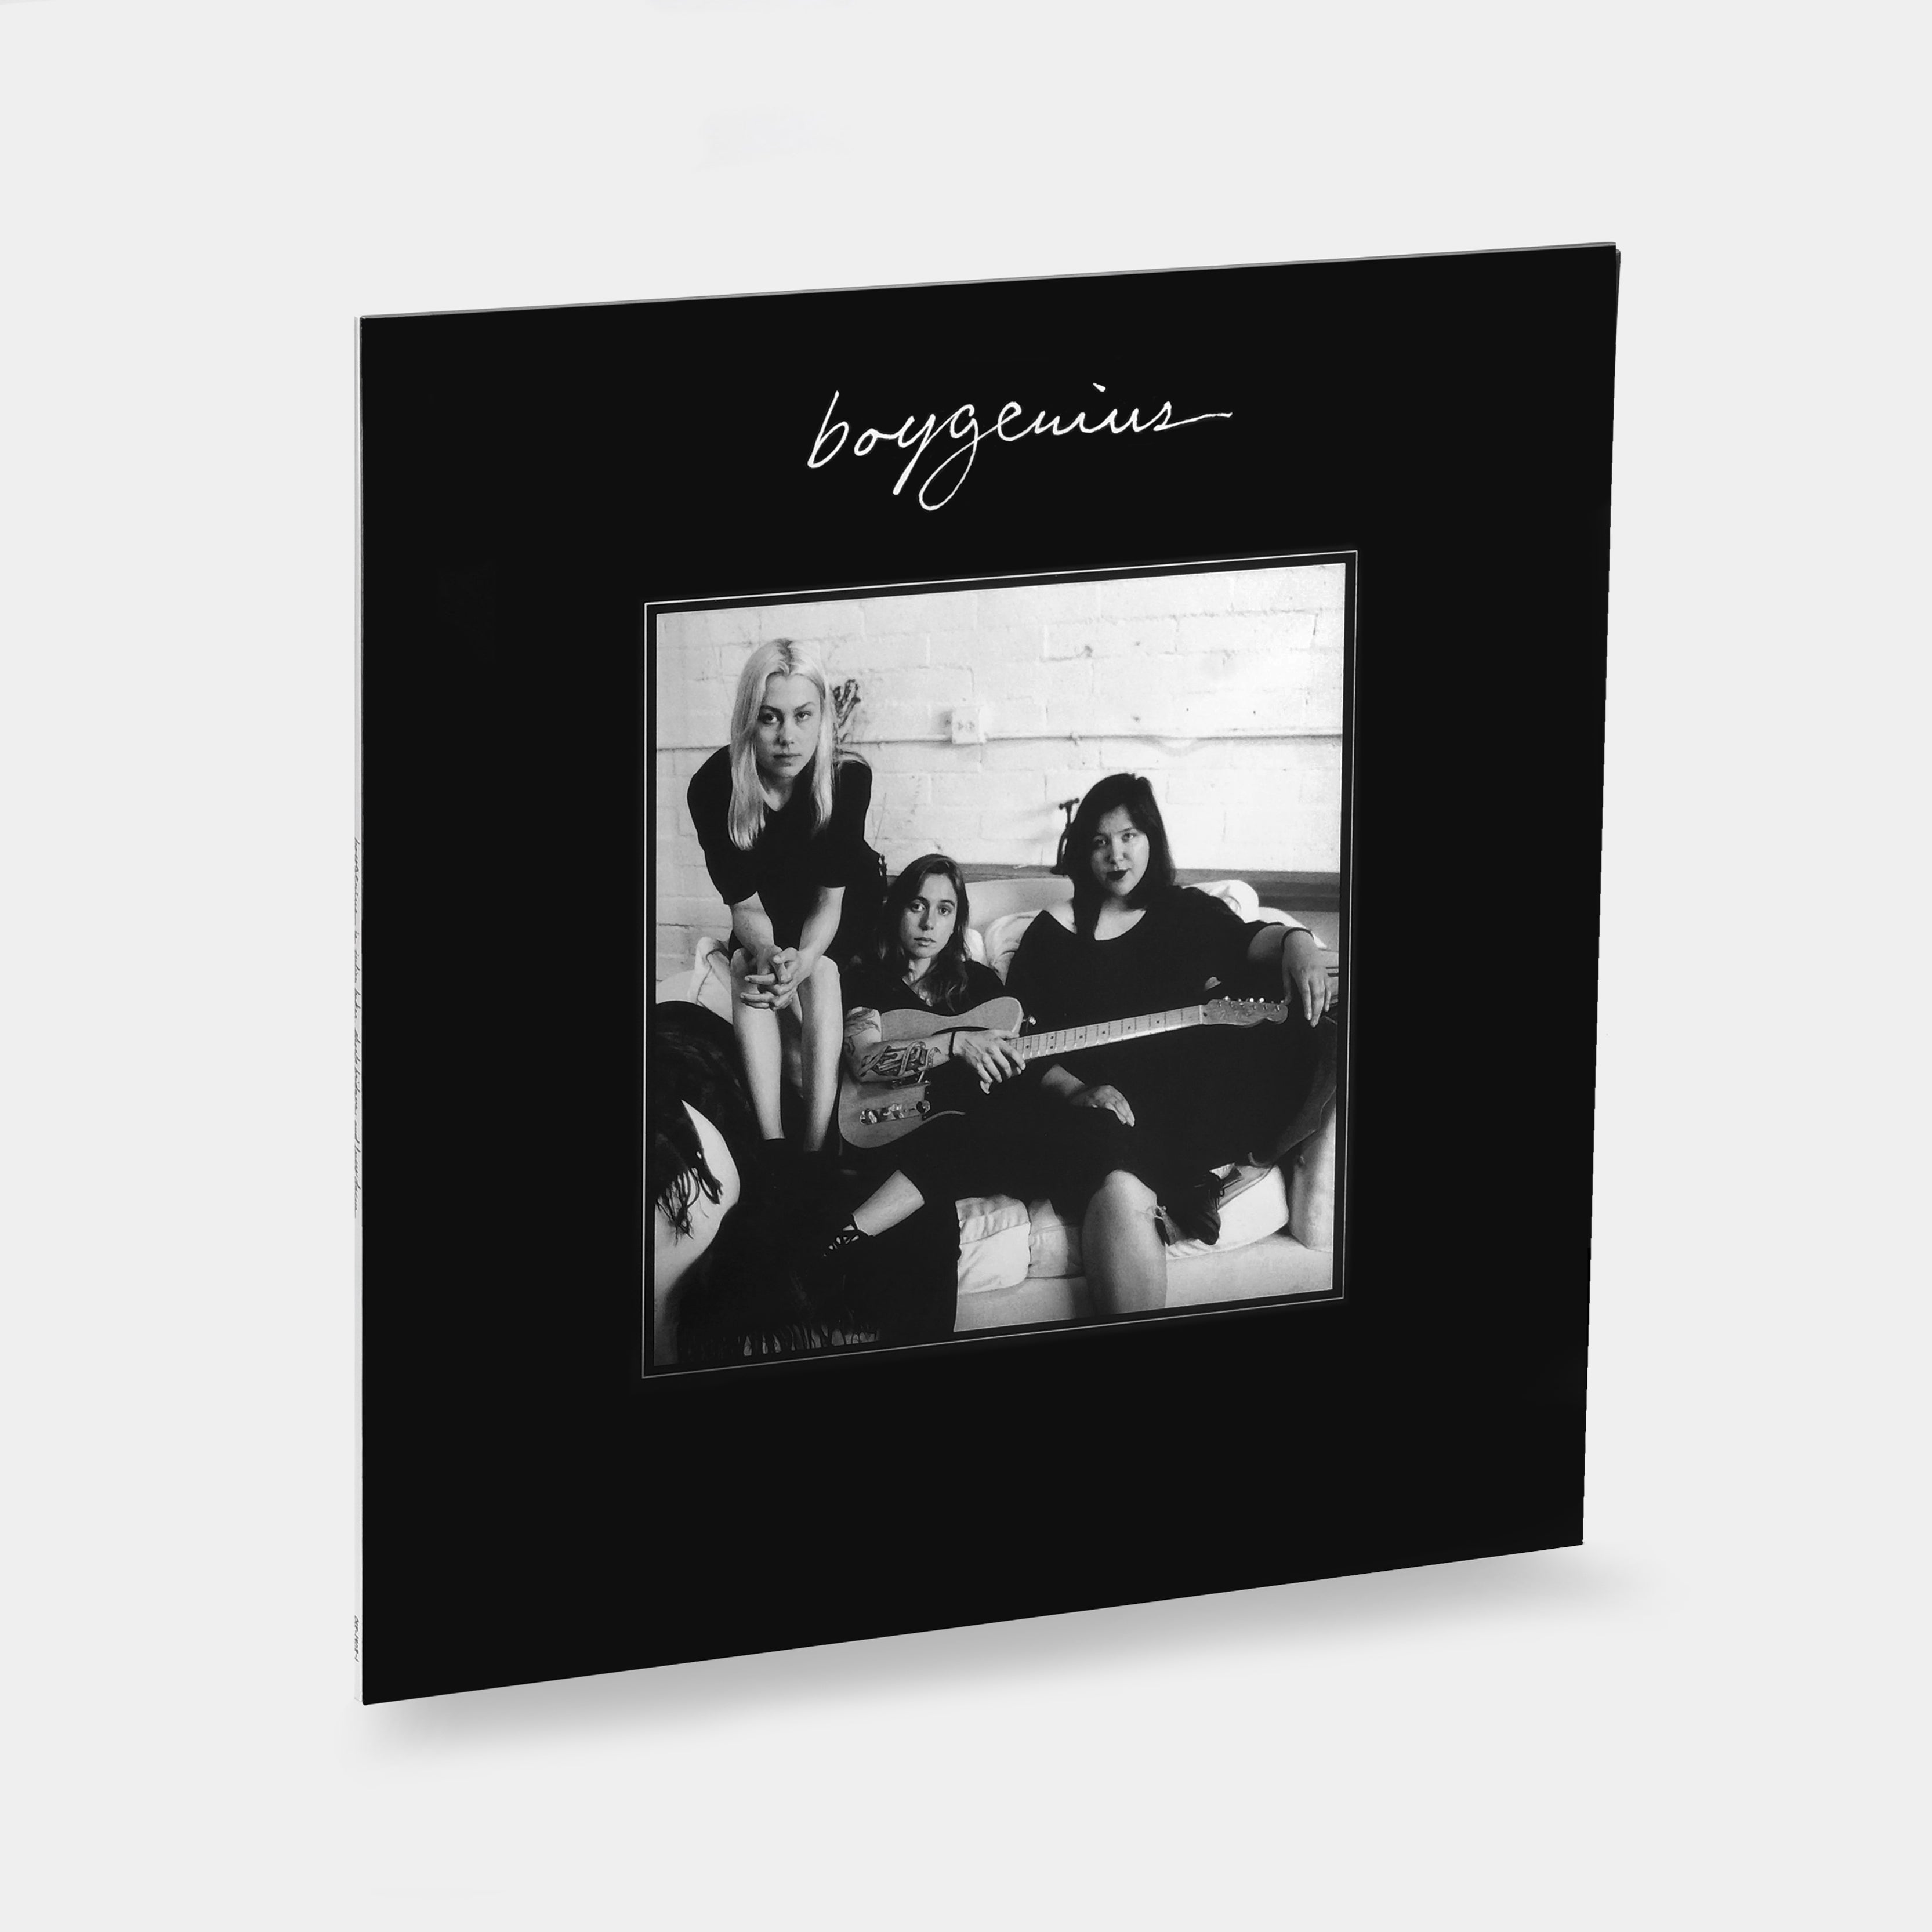 boygenius - boygenius EP Vinyl Record